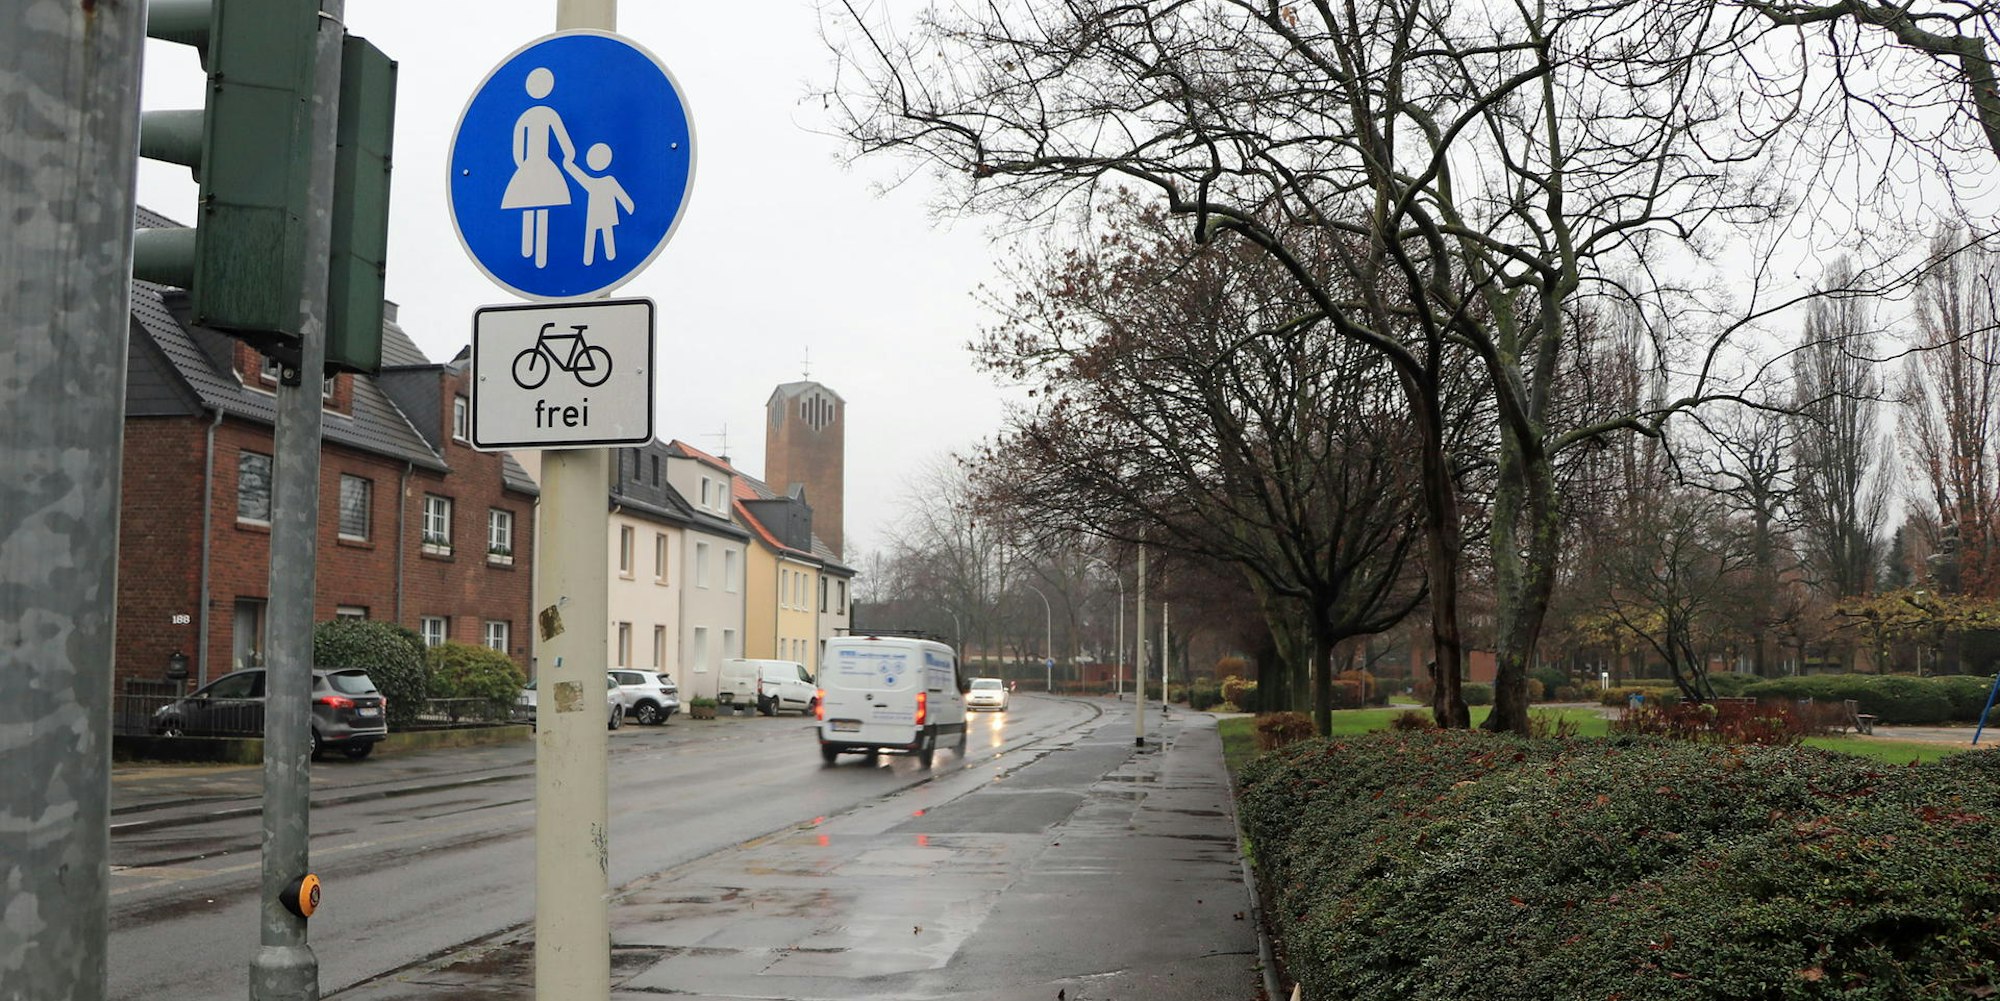 Radfahrer und Fußgänger teilen sich derzeit den breiten Gehweg entlang der Hubert-Prott-Straße.